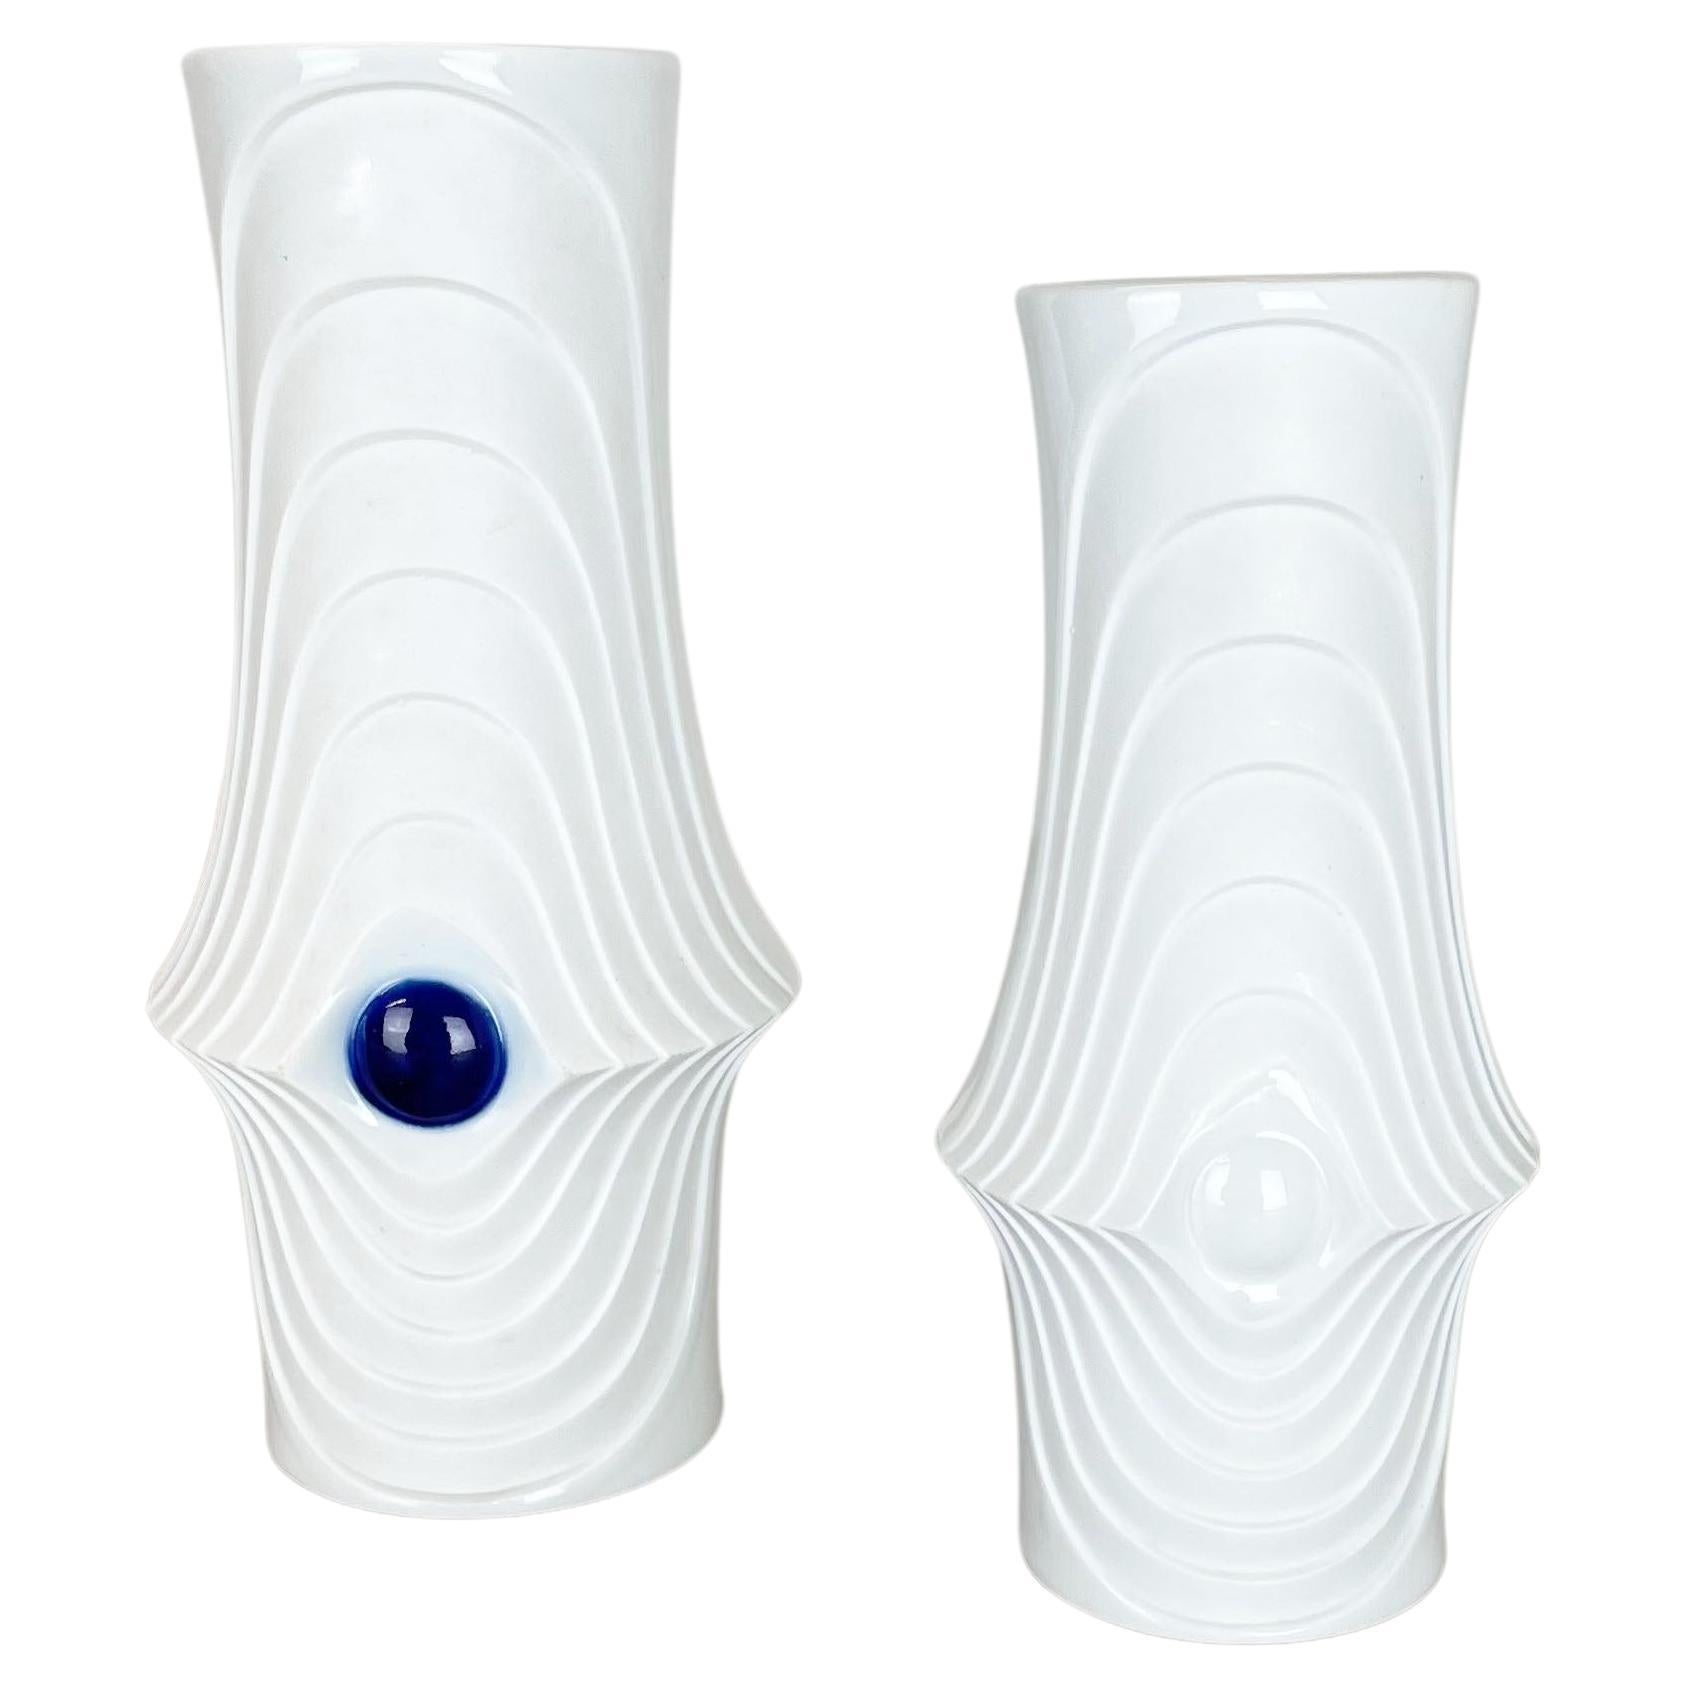 Set of 2 Original Porcelain Op Art Vase Made by Royal Bavaria KPM Germany, 1970s